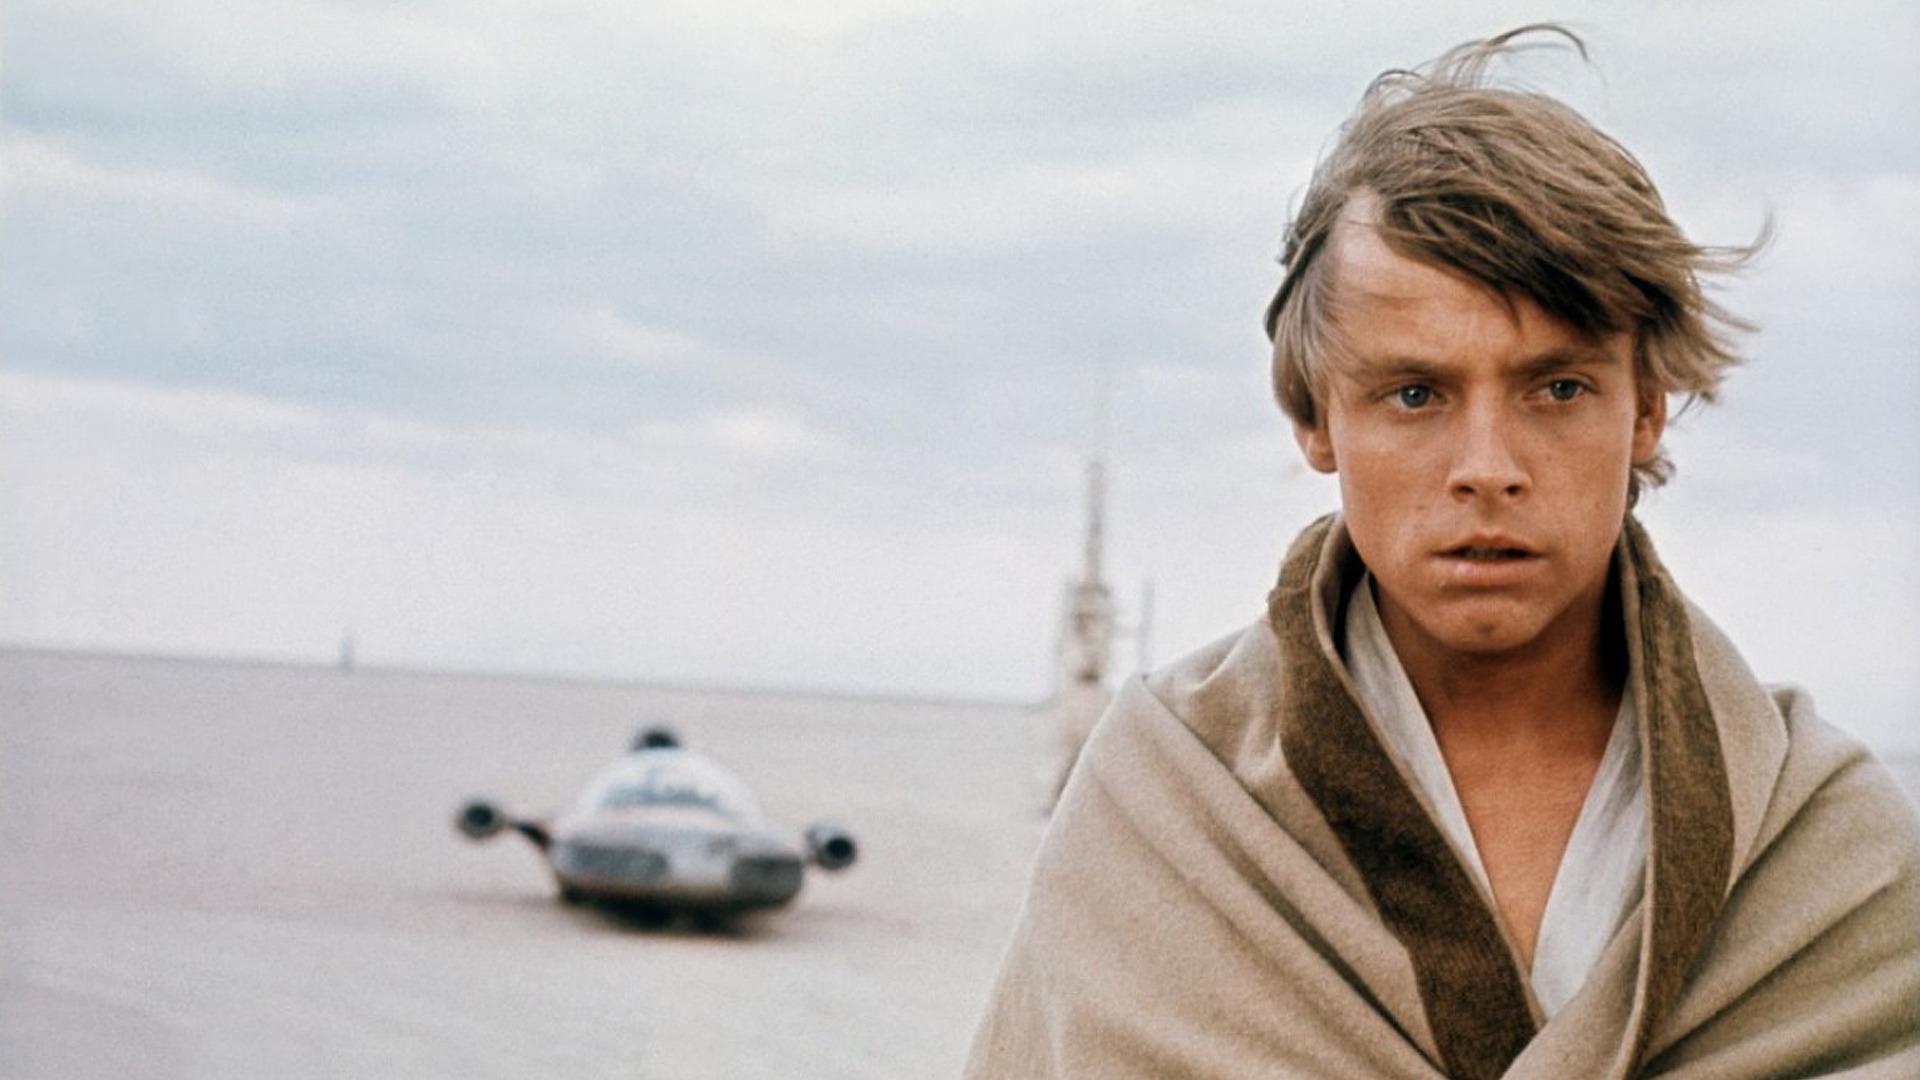 Star Wars Luke Skywalker On Tatooine HD Wallpaper Skywalker Star Wars Episode 4